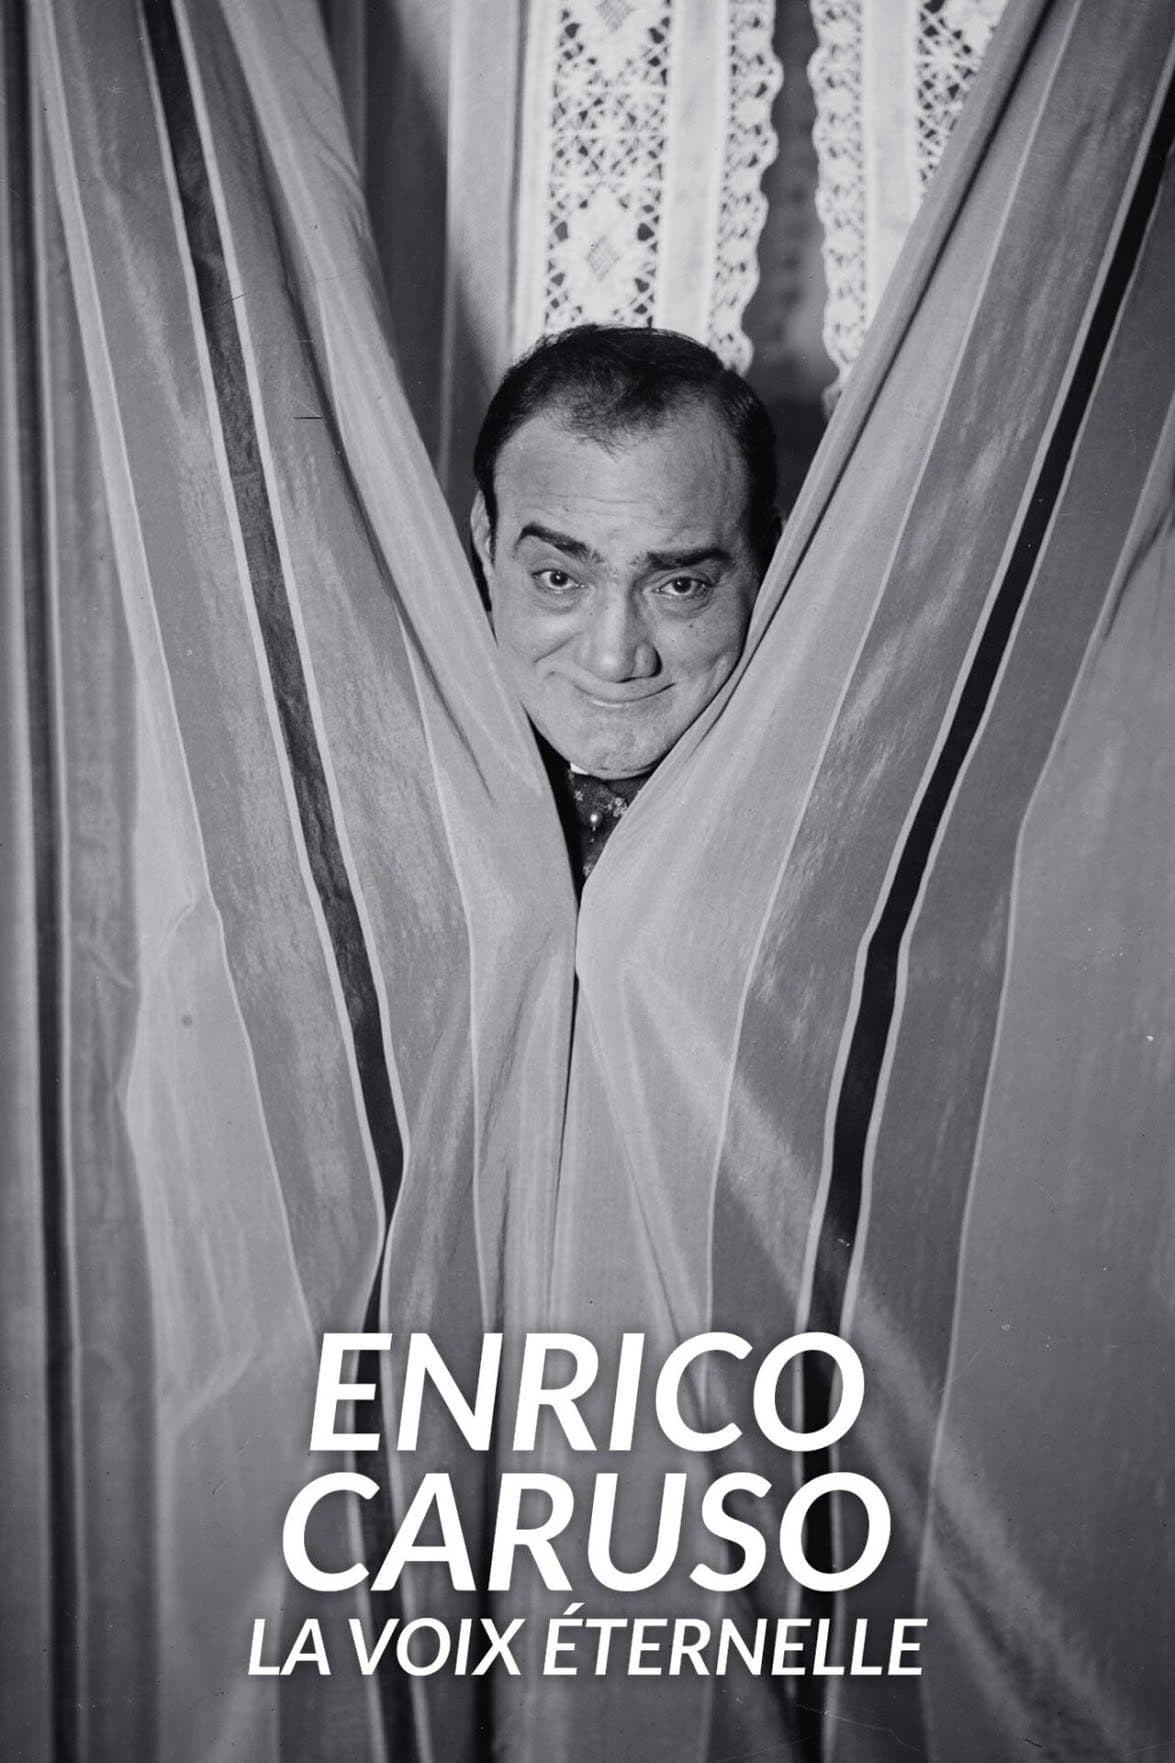 Enrico Caruso - La voix éternelle